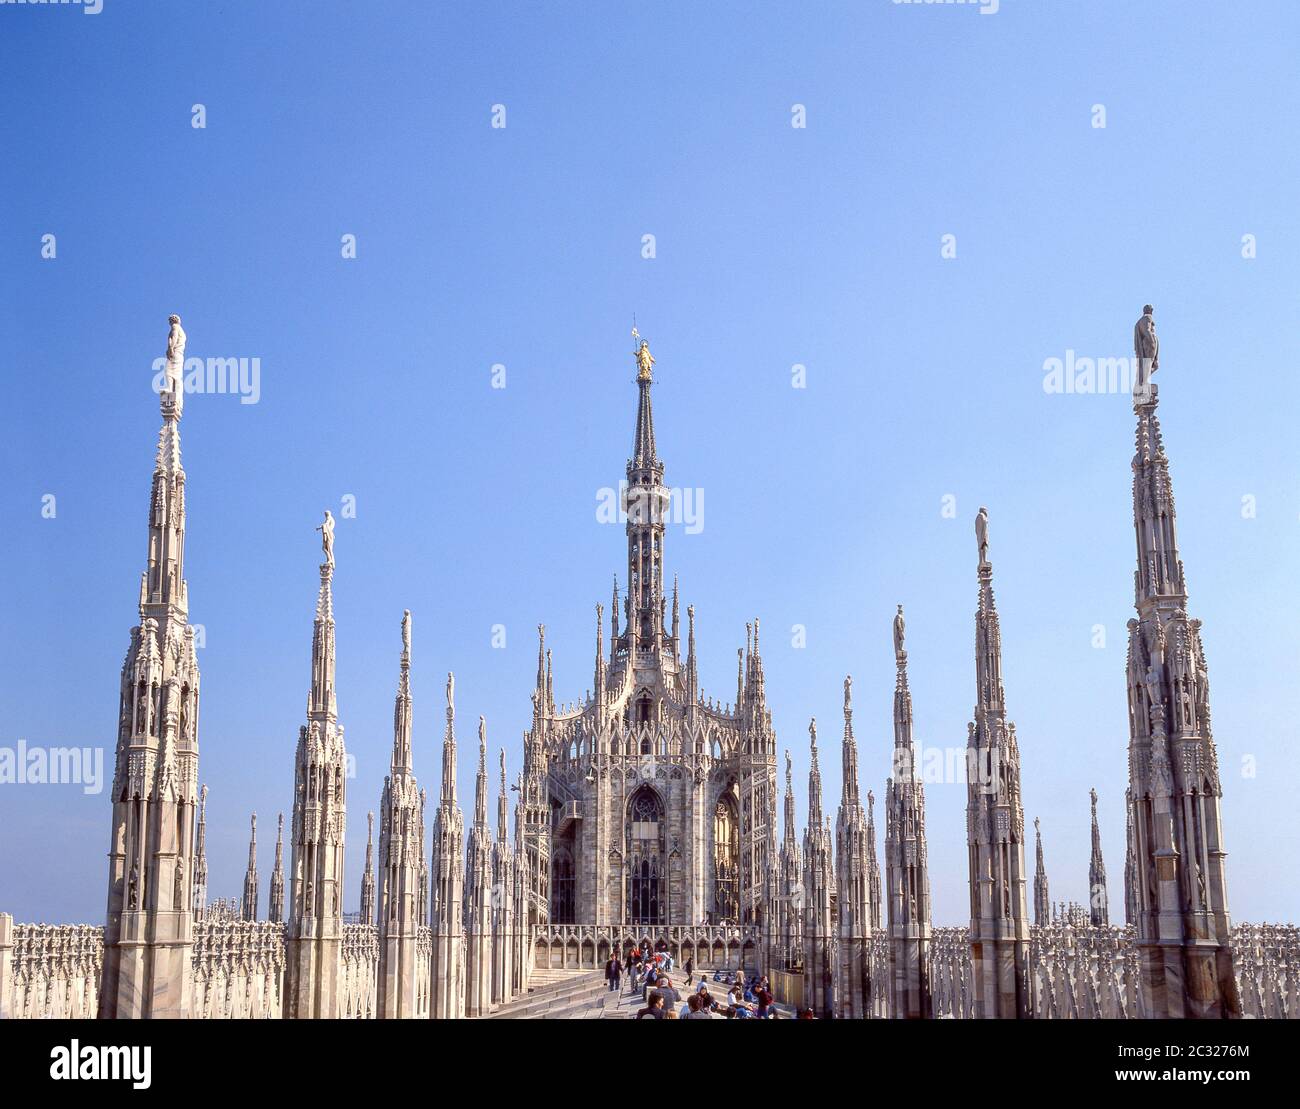 Toit de la cathédrale, Duomo di Milano (cathédrale de Milan), Piazza del Duomo, Milano (Milan), région Lombardie, Italie Banque D'Images